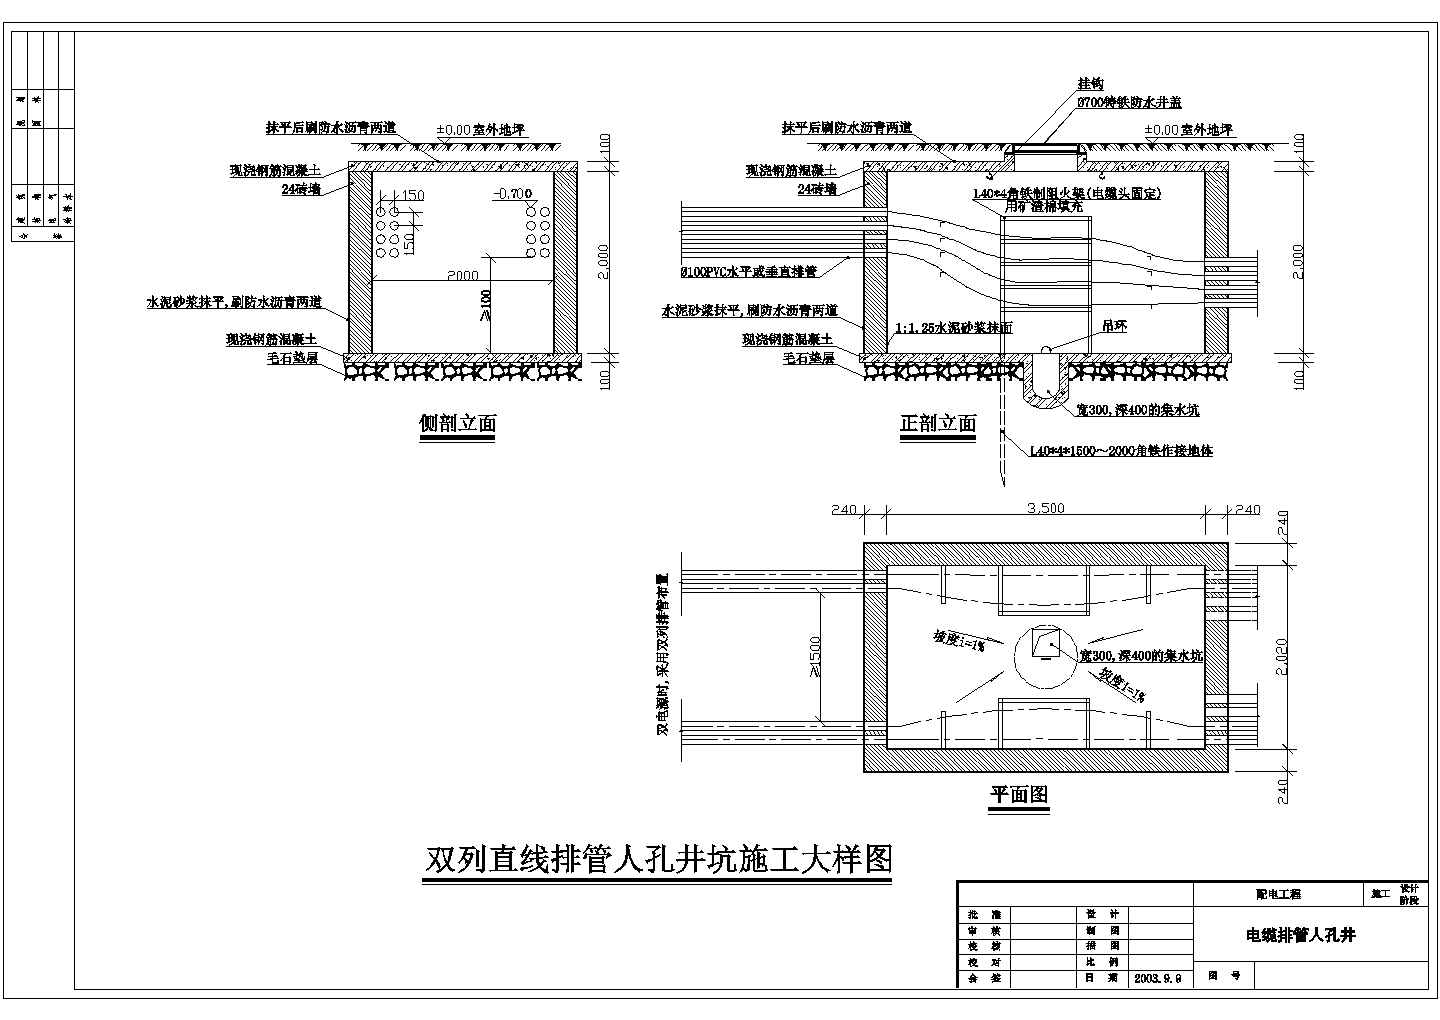 江苏省某城镇人孔井CAD设计施工图